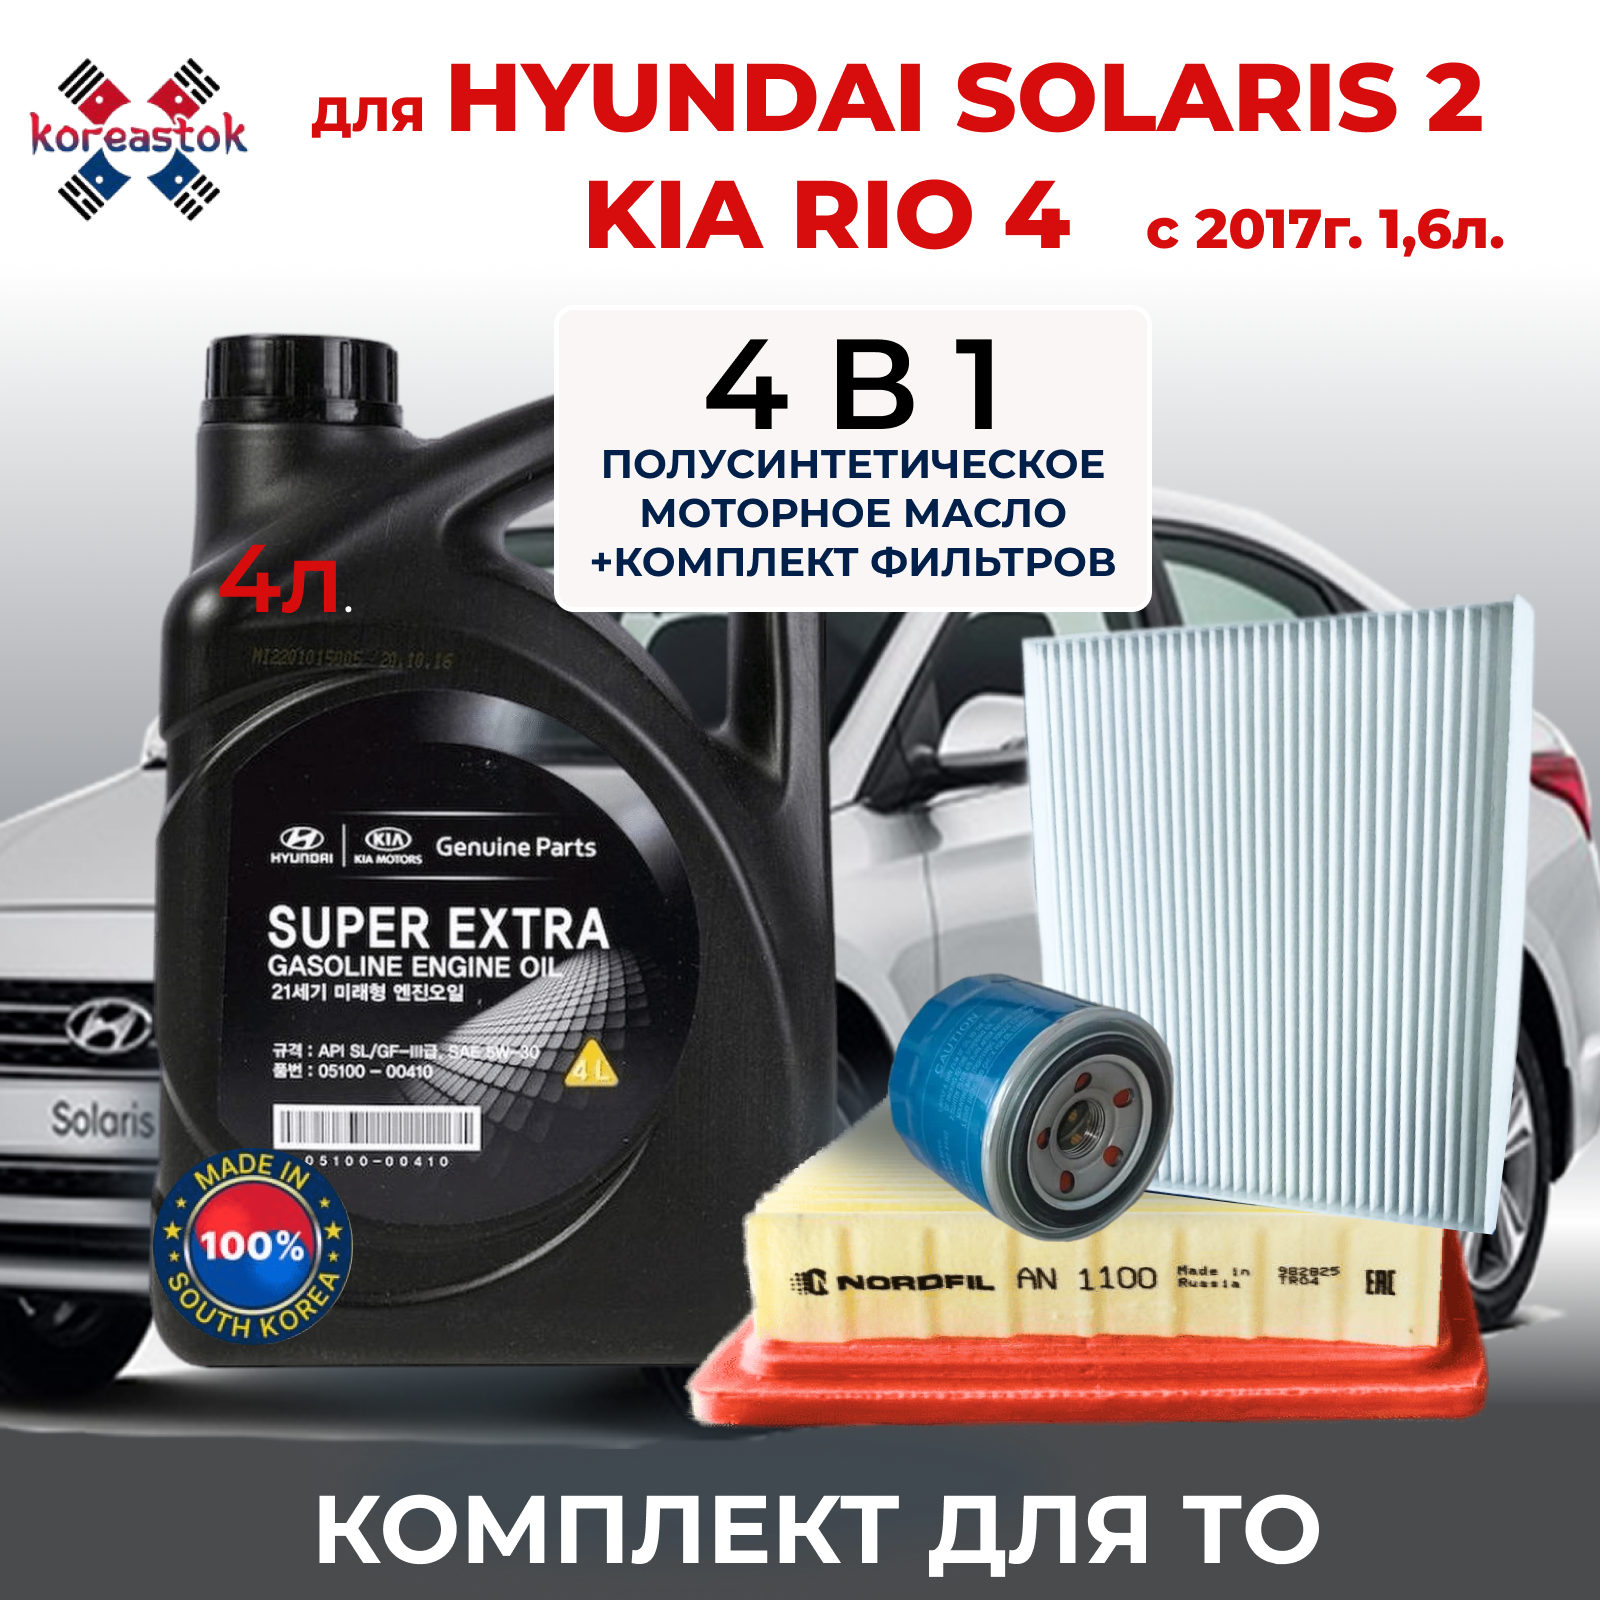 4 в 1. Mасло моторное 5W-30 + набор фильтров (масляный , воздушный, салонный)для KIA RIO, HYUNDAI SOLARIS 1.6 с 2017г.